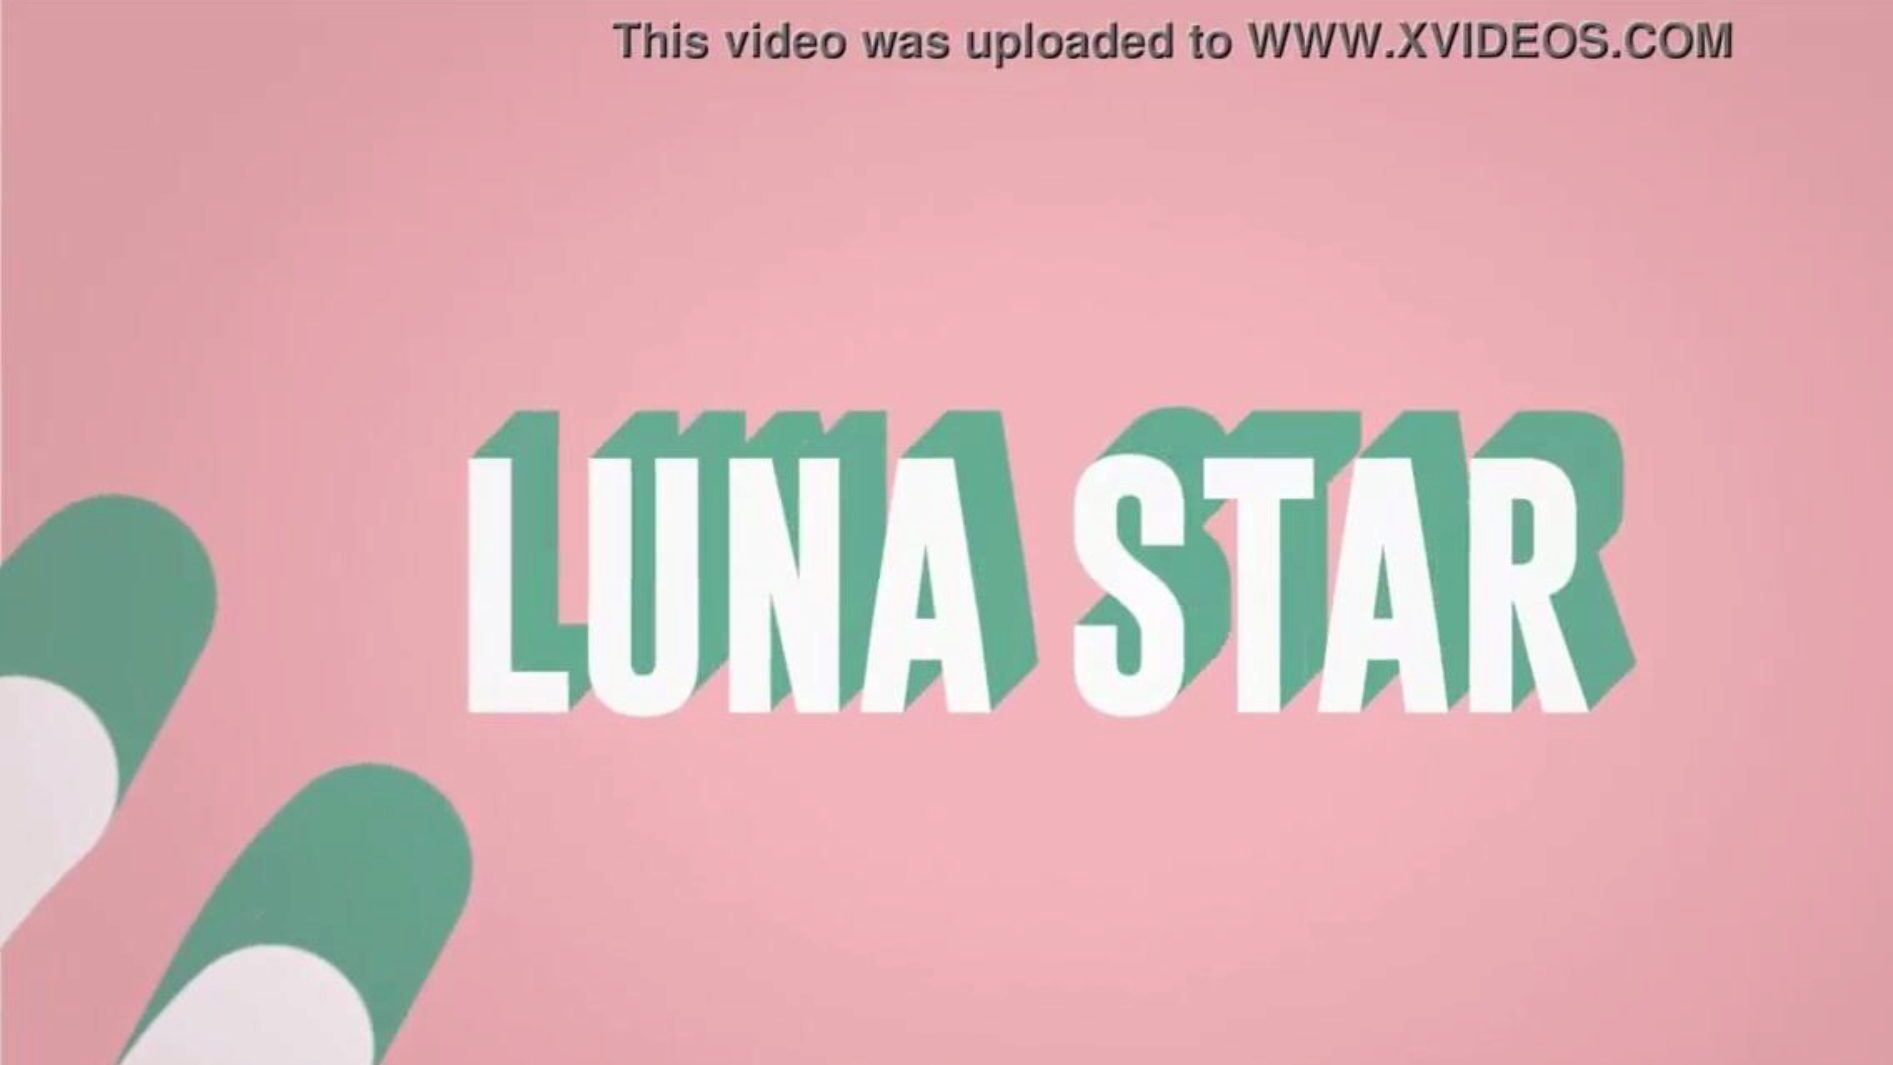 het is mijn verdomde wifi: Brazzers-aflevering met Luna Star; zie volledig op www.zzfull.com/luna